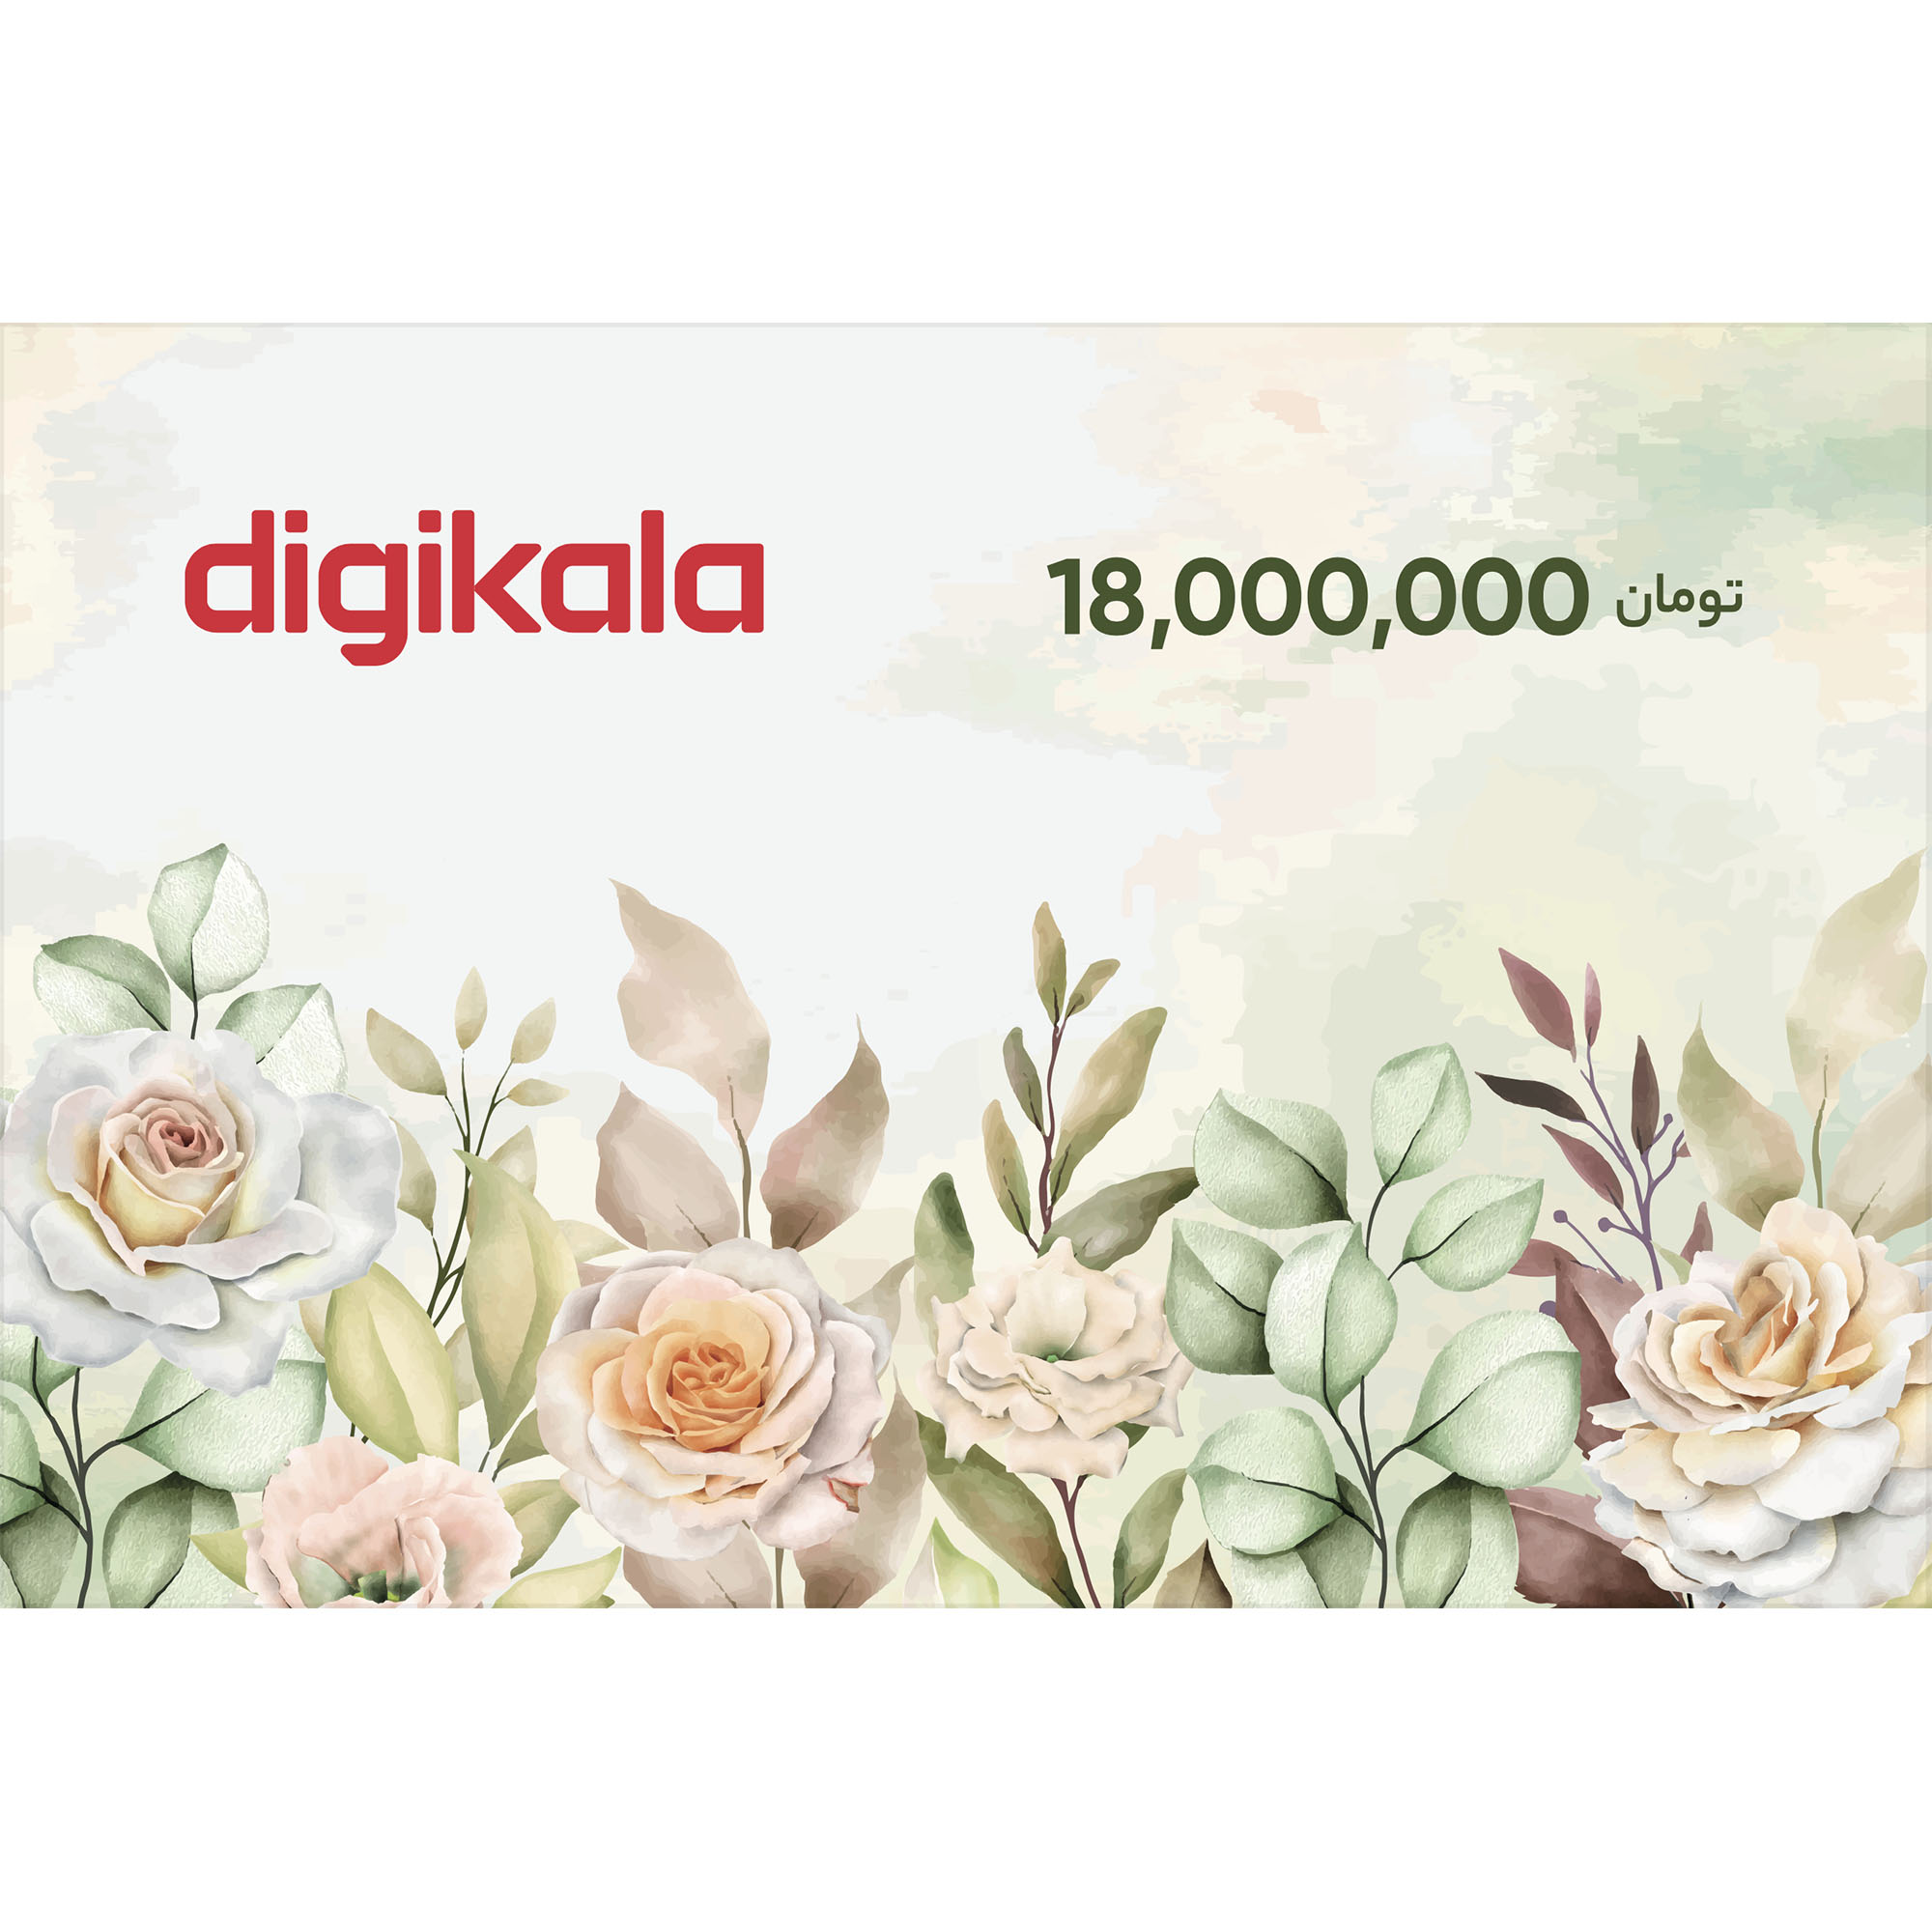 نکته خرید - قیمت روز کارت هدیه دیجی کالا به ارزش 18.000.000 تومان طرح گل خرید